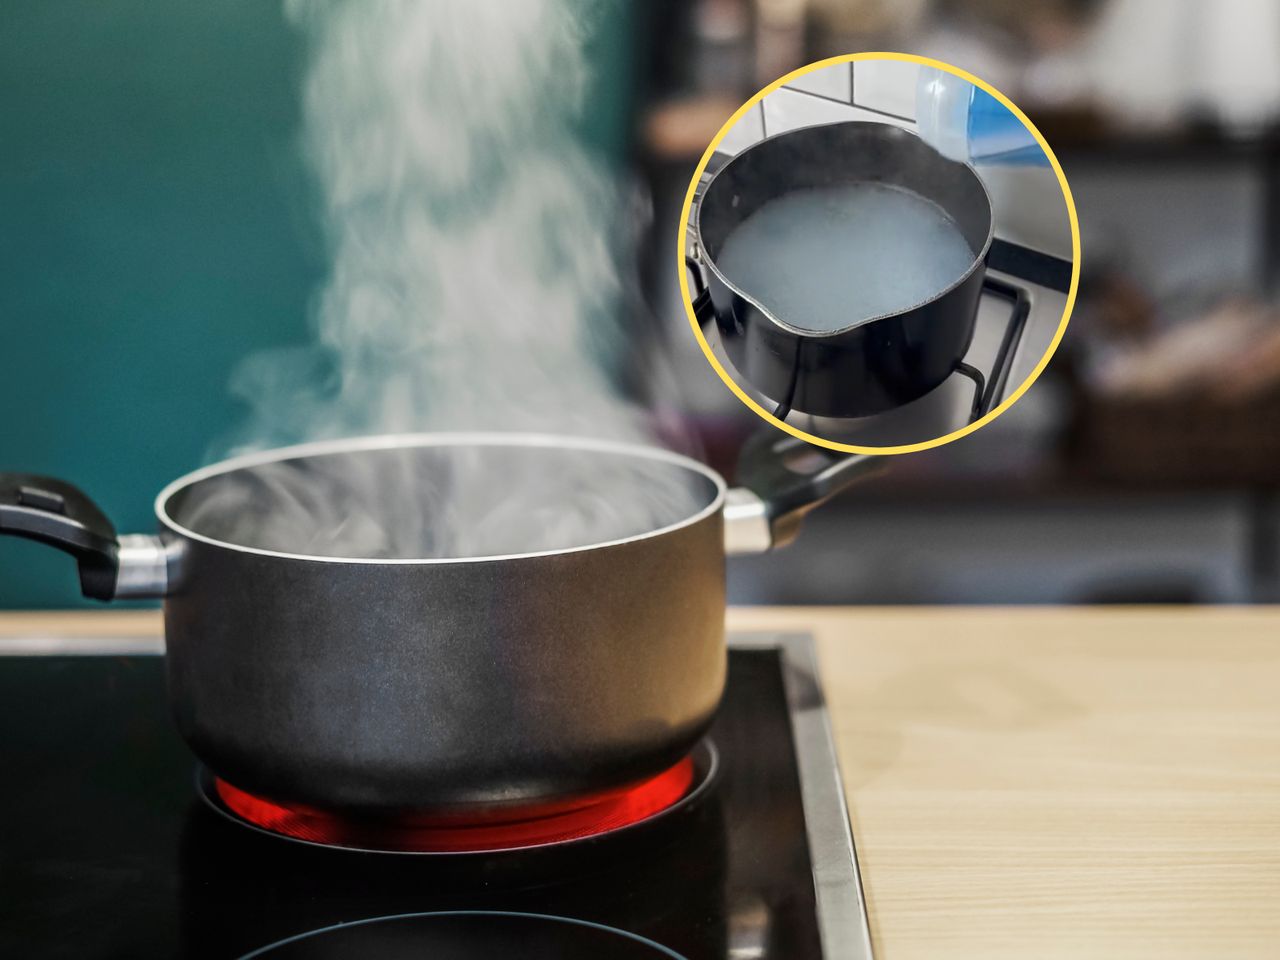 Dodaj to do gotującej się wody i pozbądź się intensywnych zapachów z kuchni